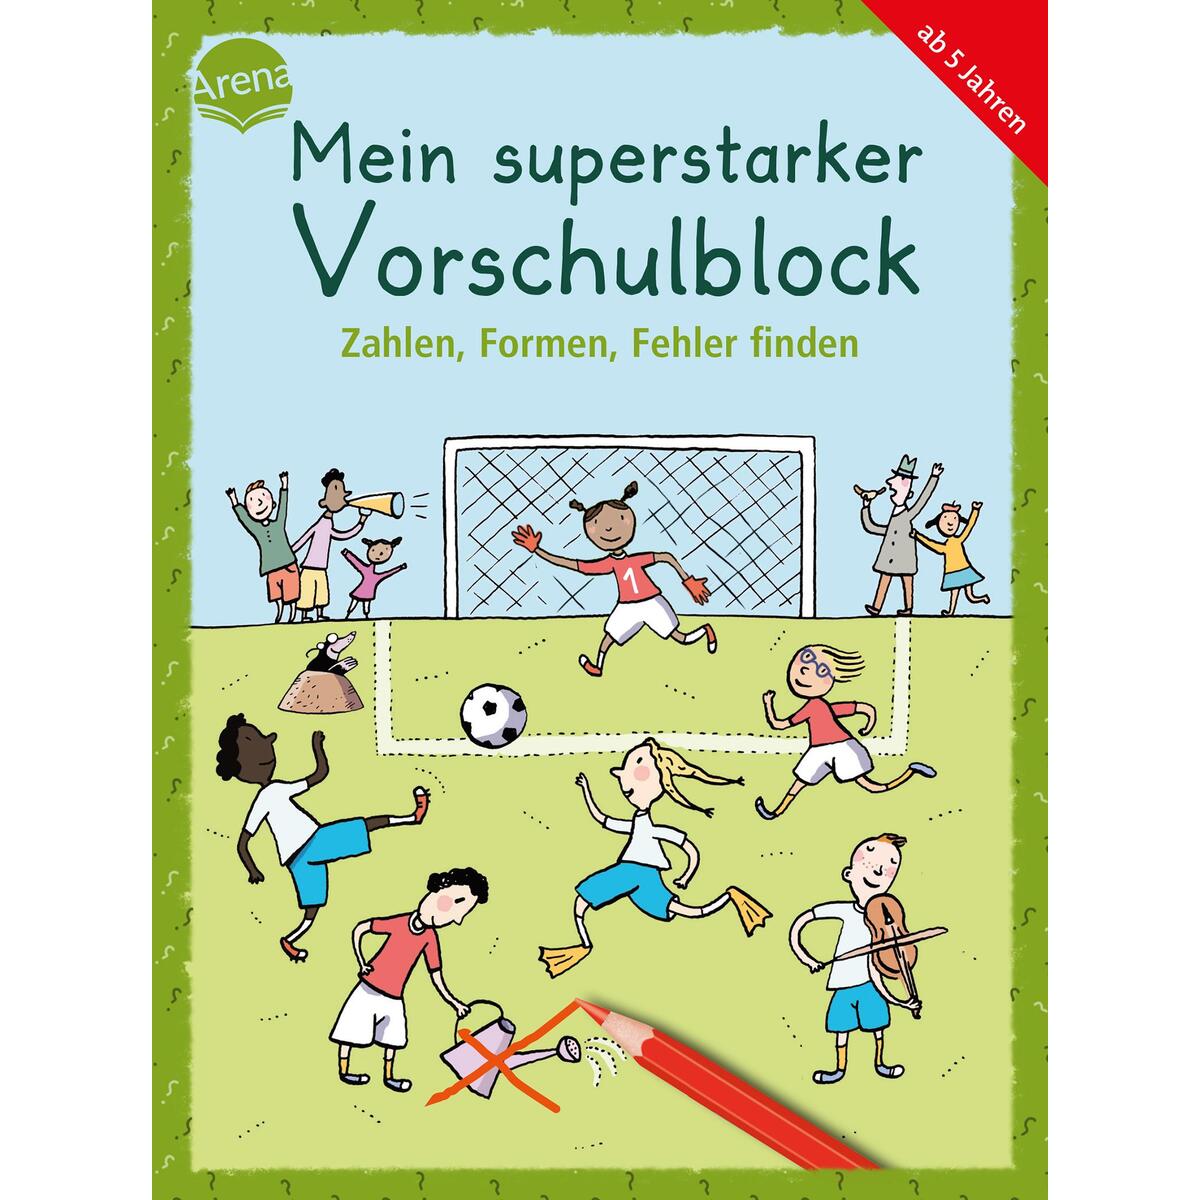 Mein superstarker Vorschulblock. Zahlen, Formen, Fehler finden von Arena Verlag GmbH